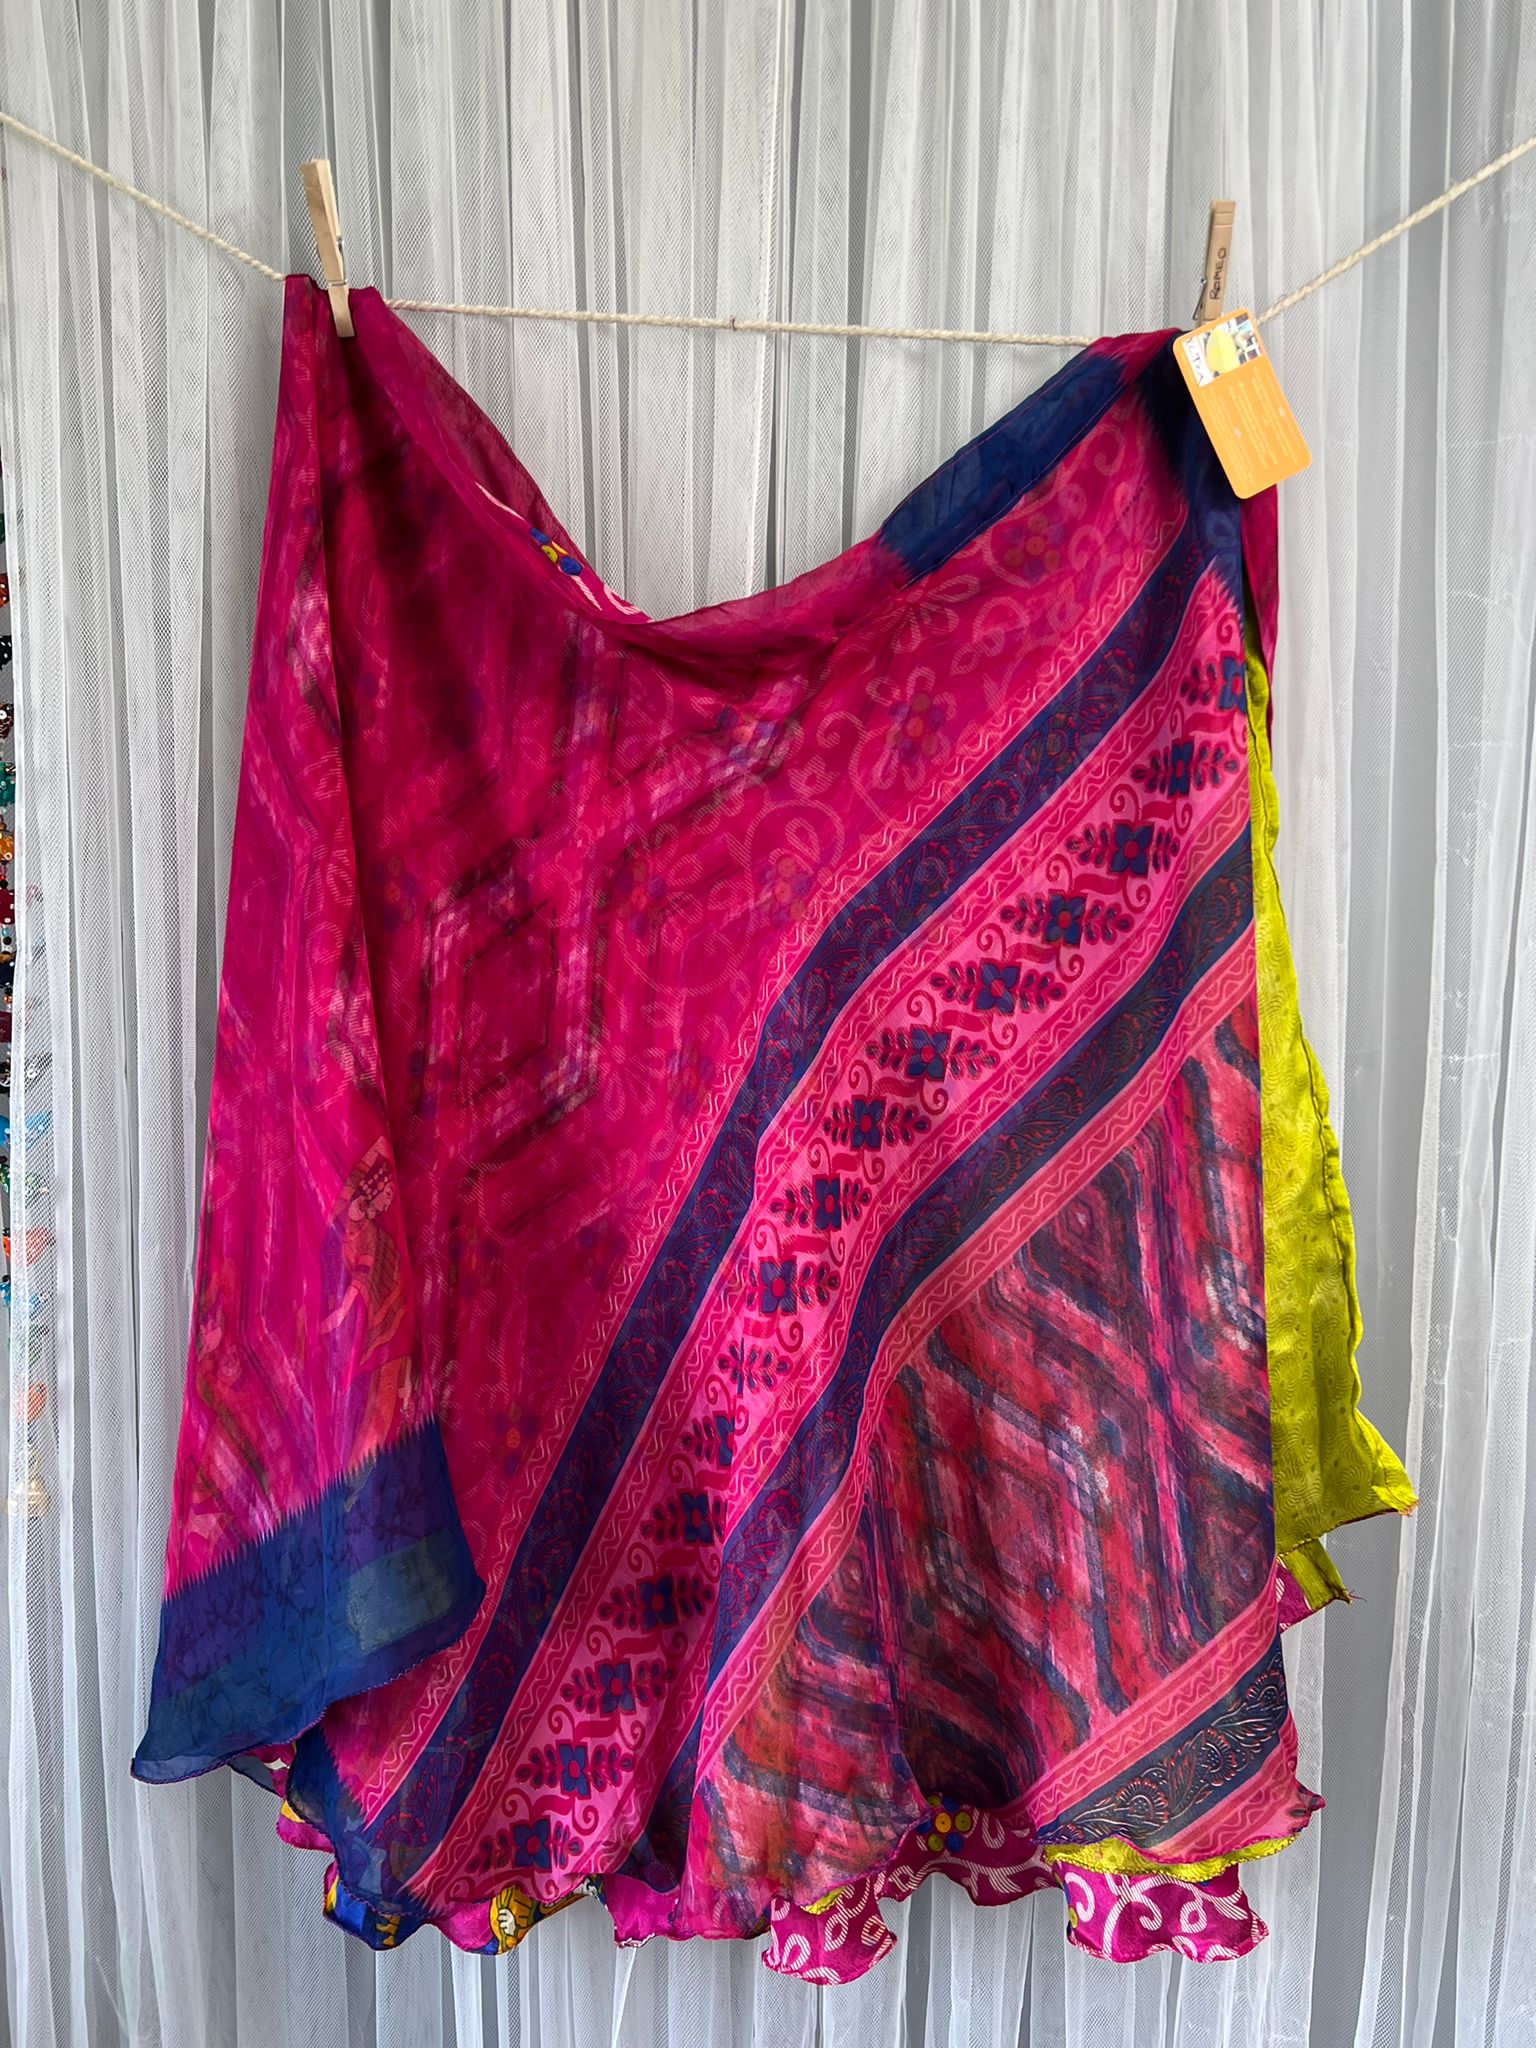 Mytri Premium XL Tea -PP007 - Rangeelaa- Fairtrade Sustainable Women's Clothingsaree wrap skirts